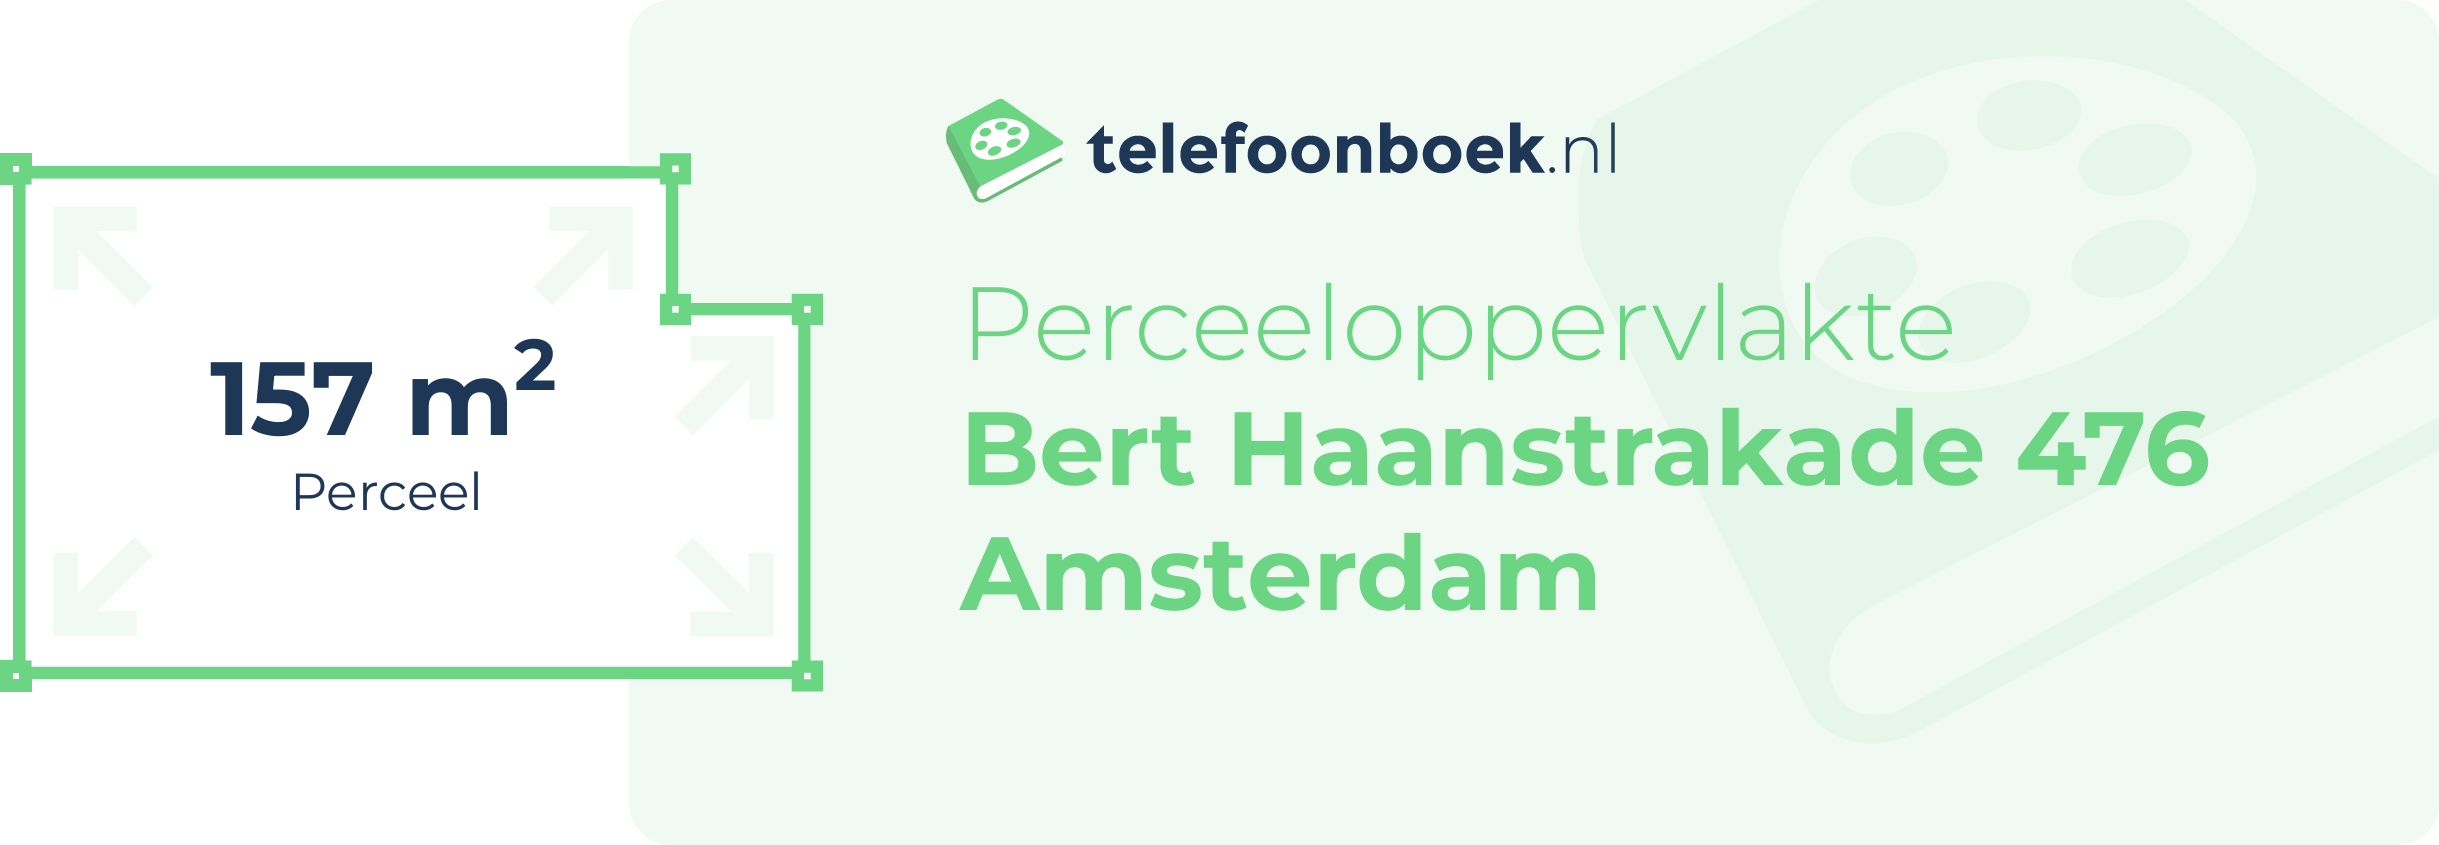 Perceeloppervlakte Bert Haanstrakade 476 Amsterdam